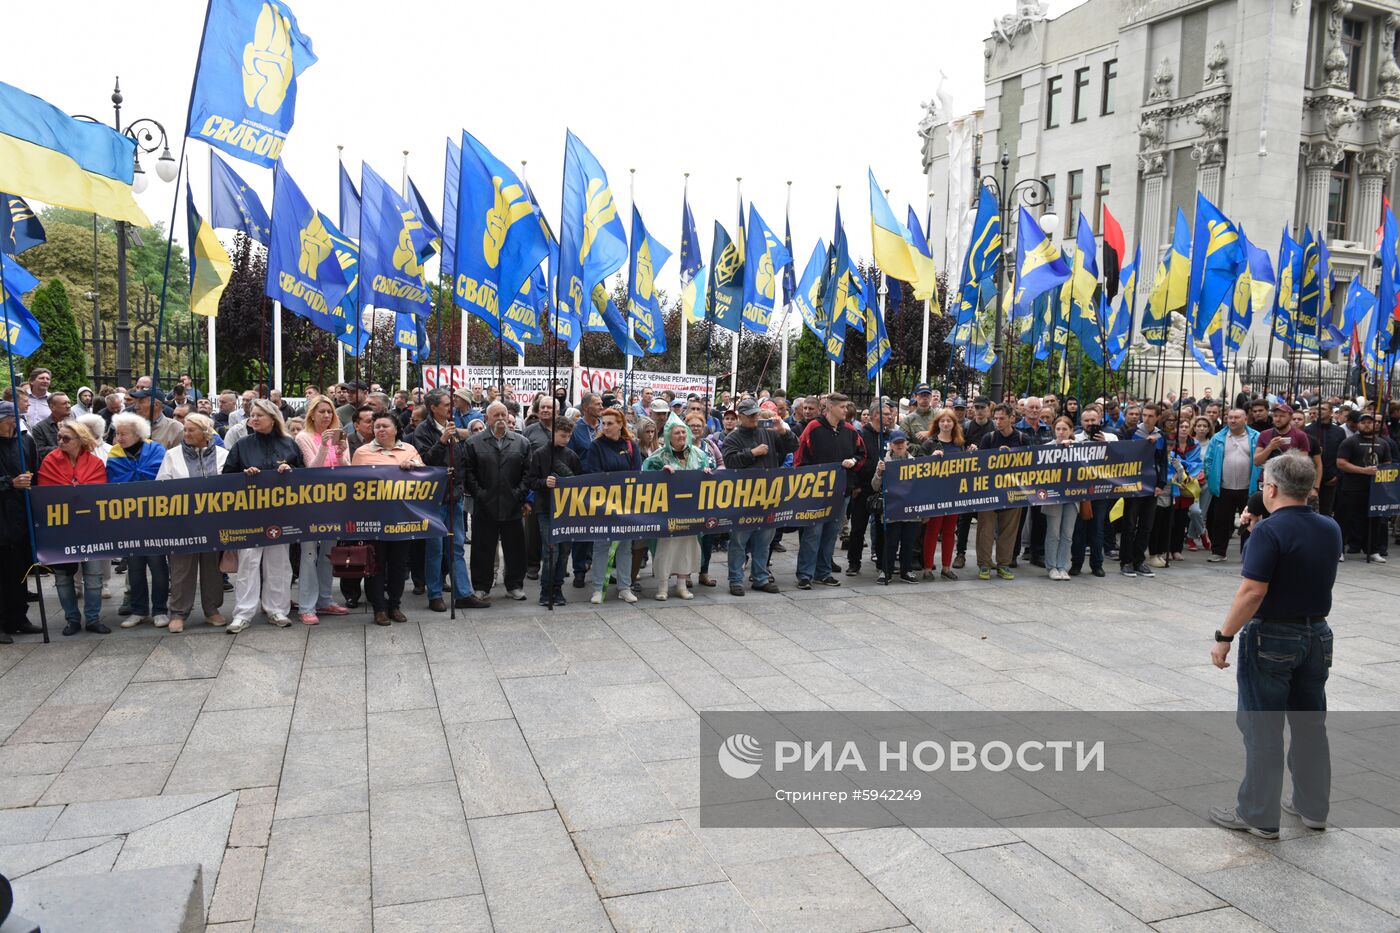 Акция националистов в Киеве "Украина превыше всего"